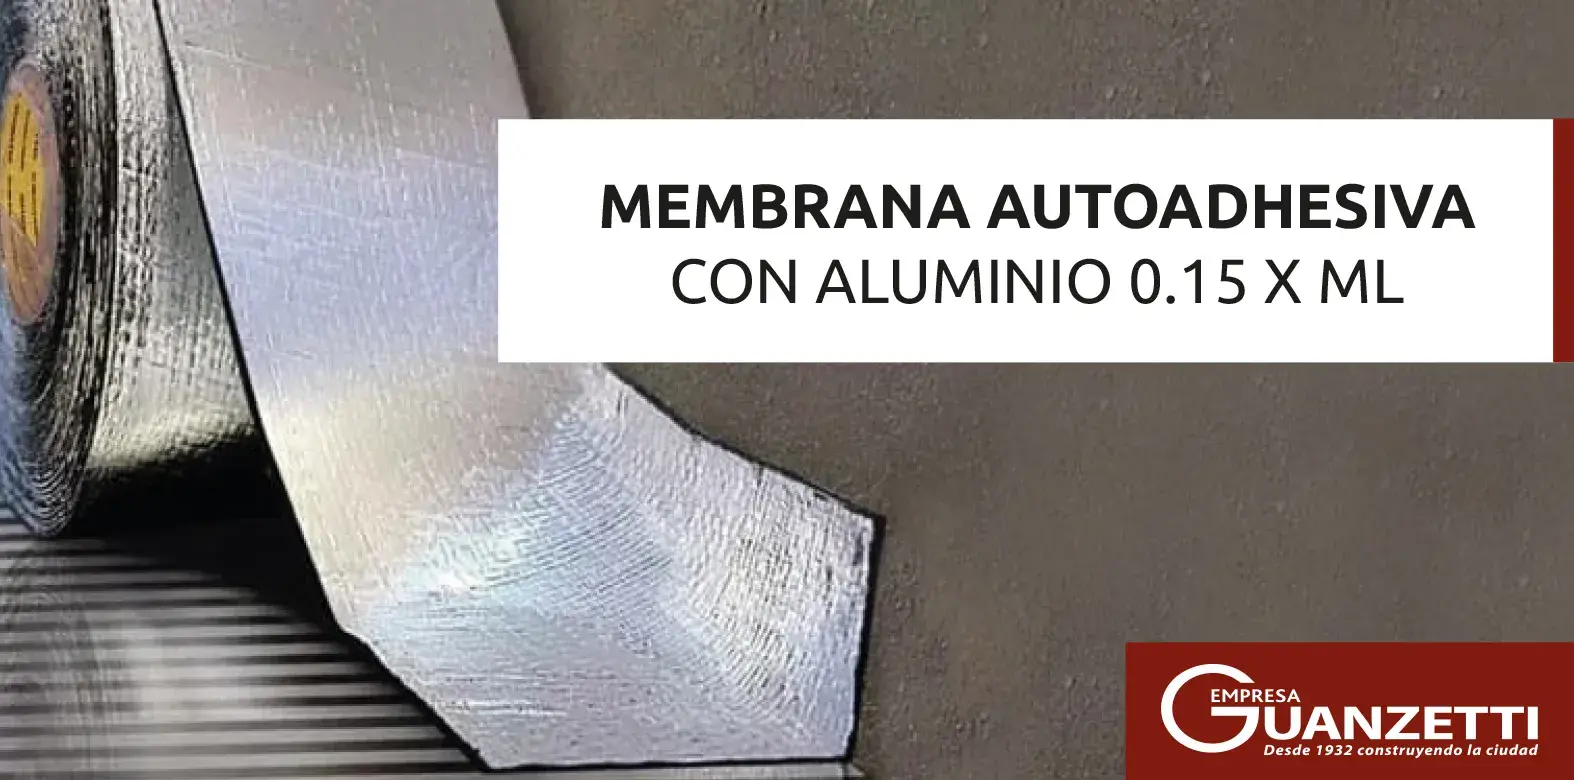 Membrana Autoadhesiva Con Aluminio 0.15 X Ml